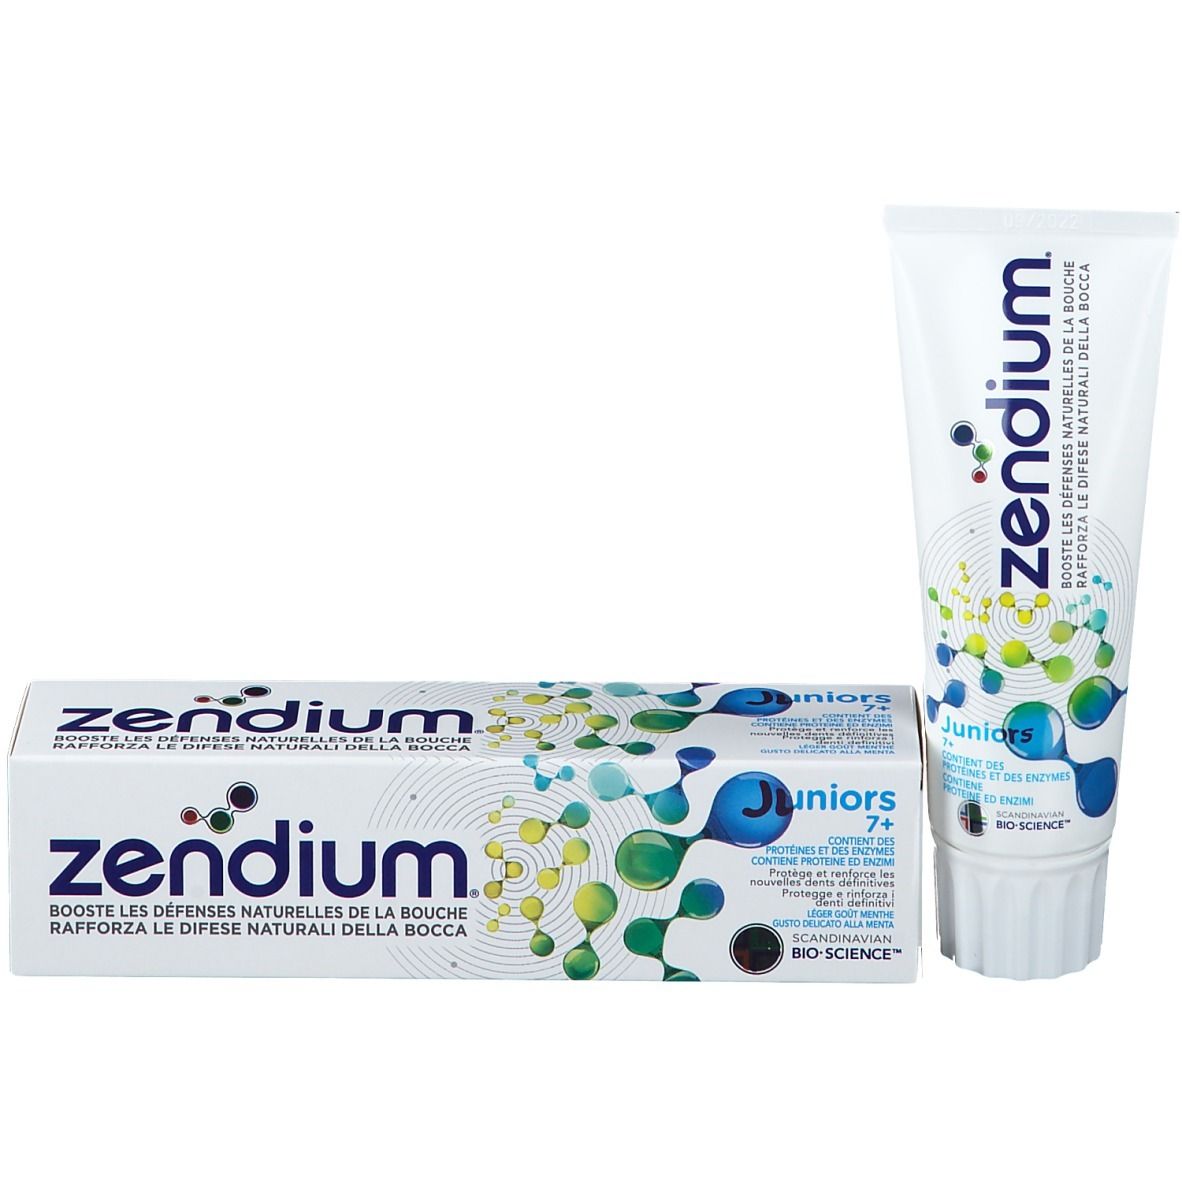 Zendium® Juniors 7+